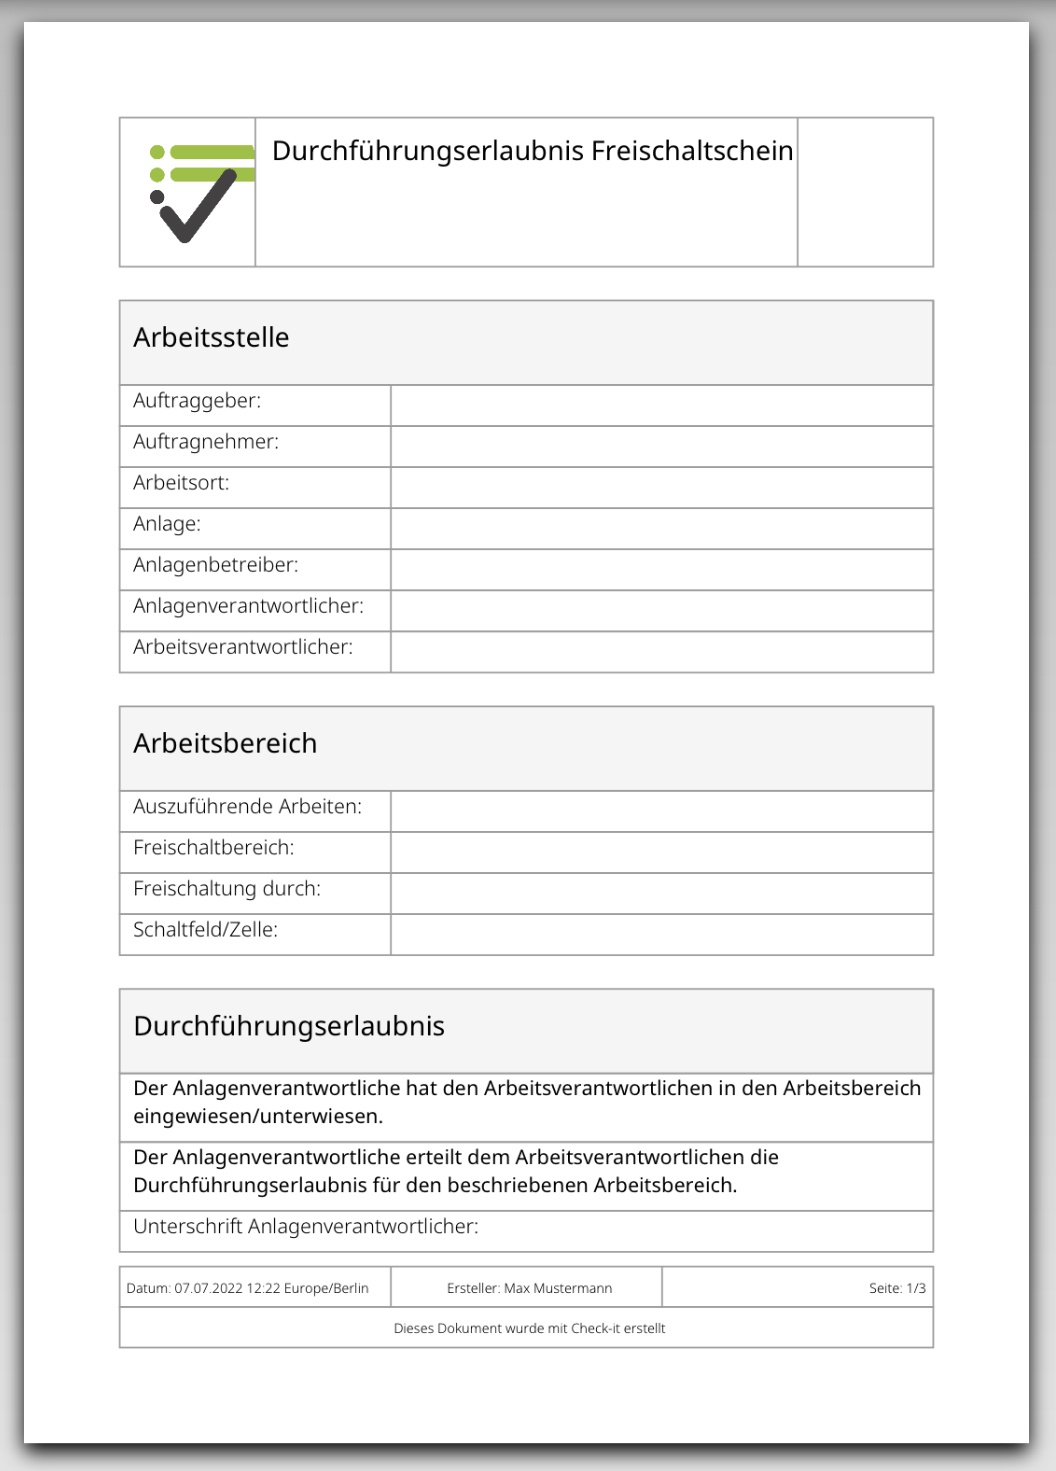 Das Bild zeigt die PDF-Datei, zur Checkliste Durchführungserlaubnis Freischaltschein